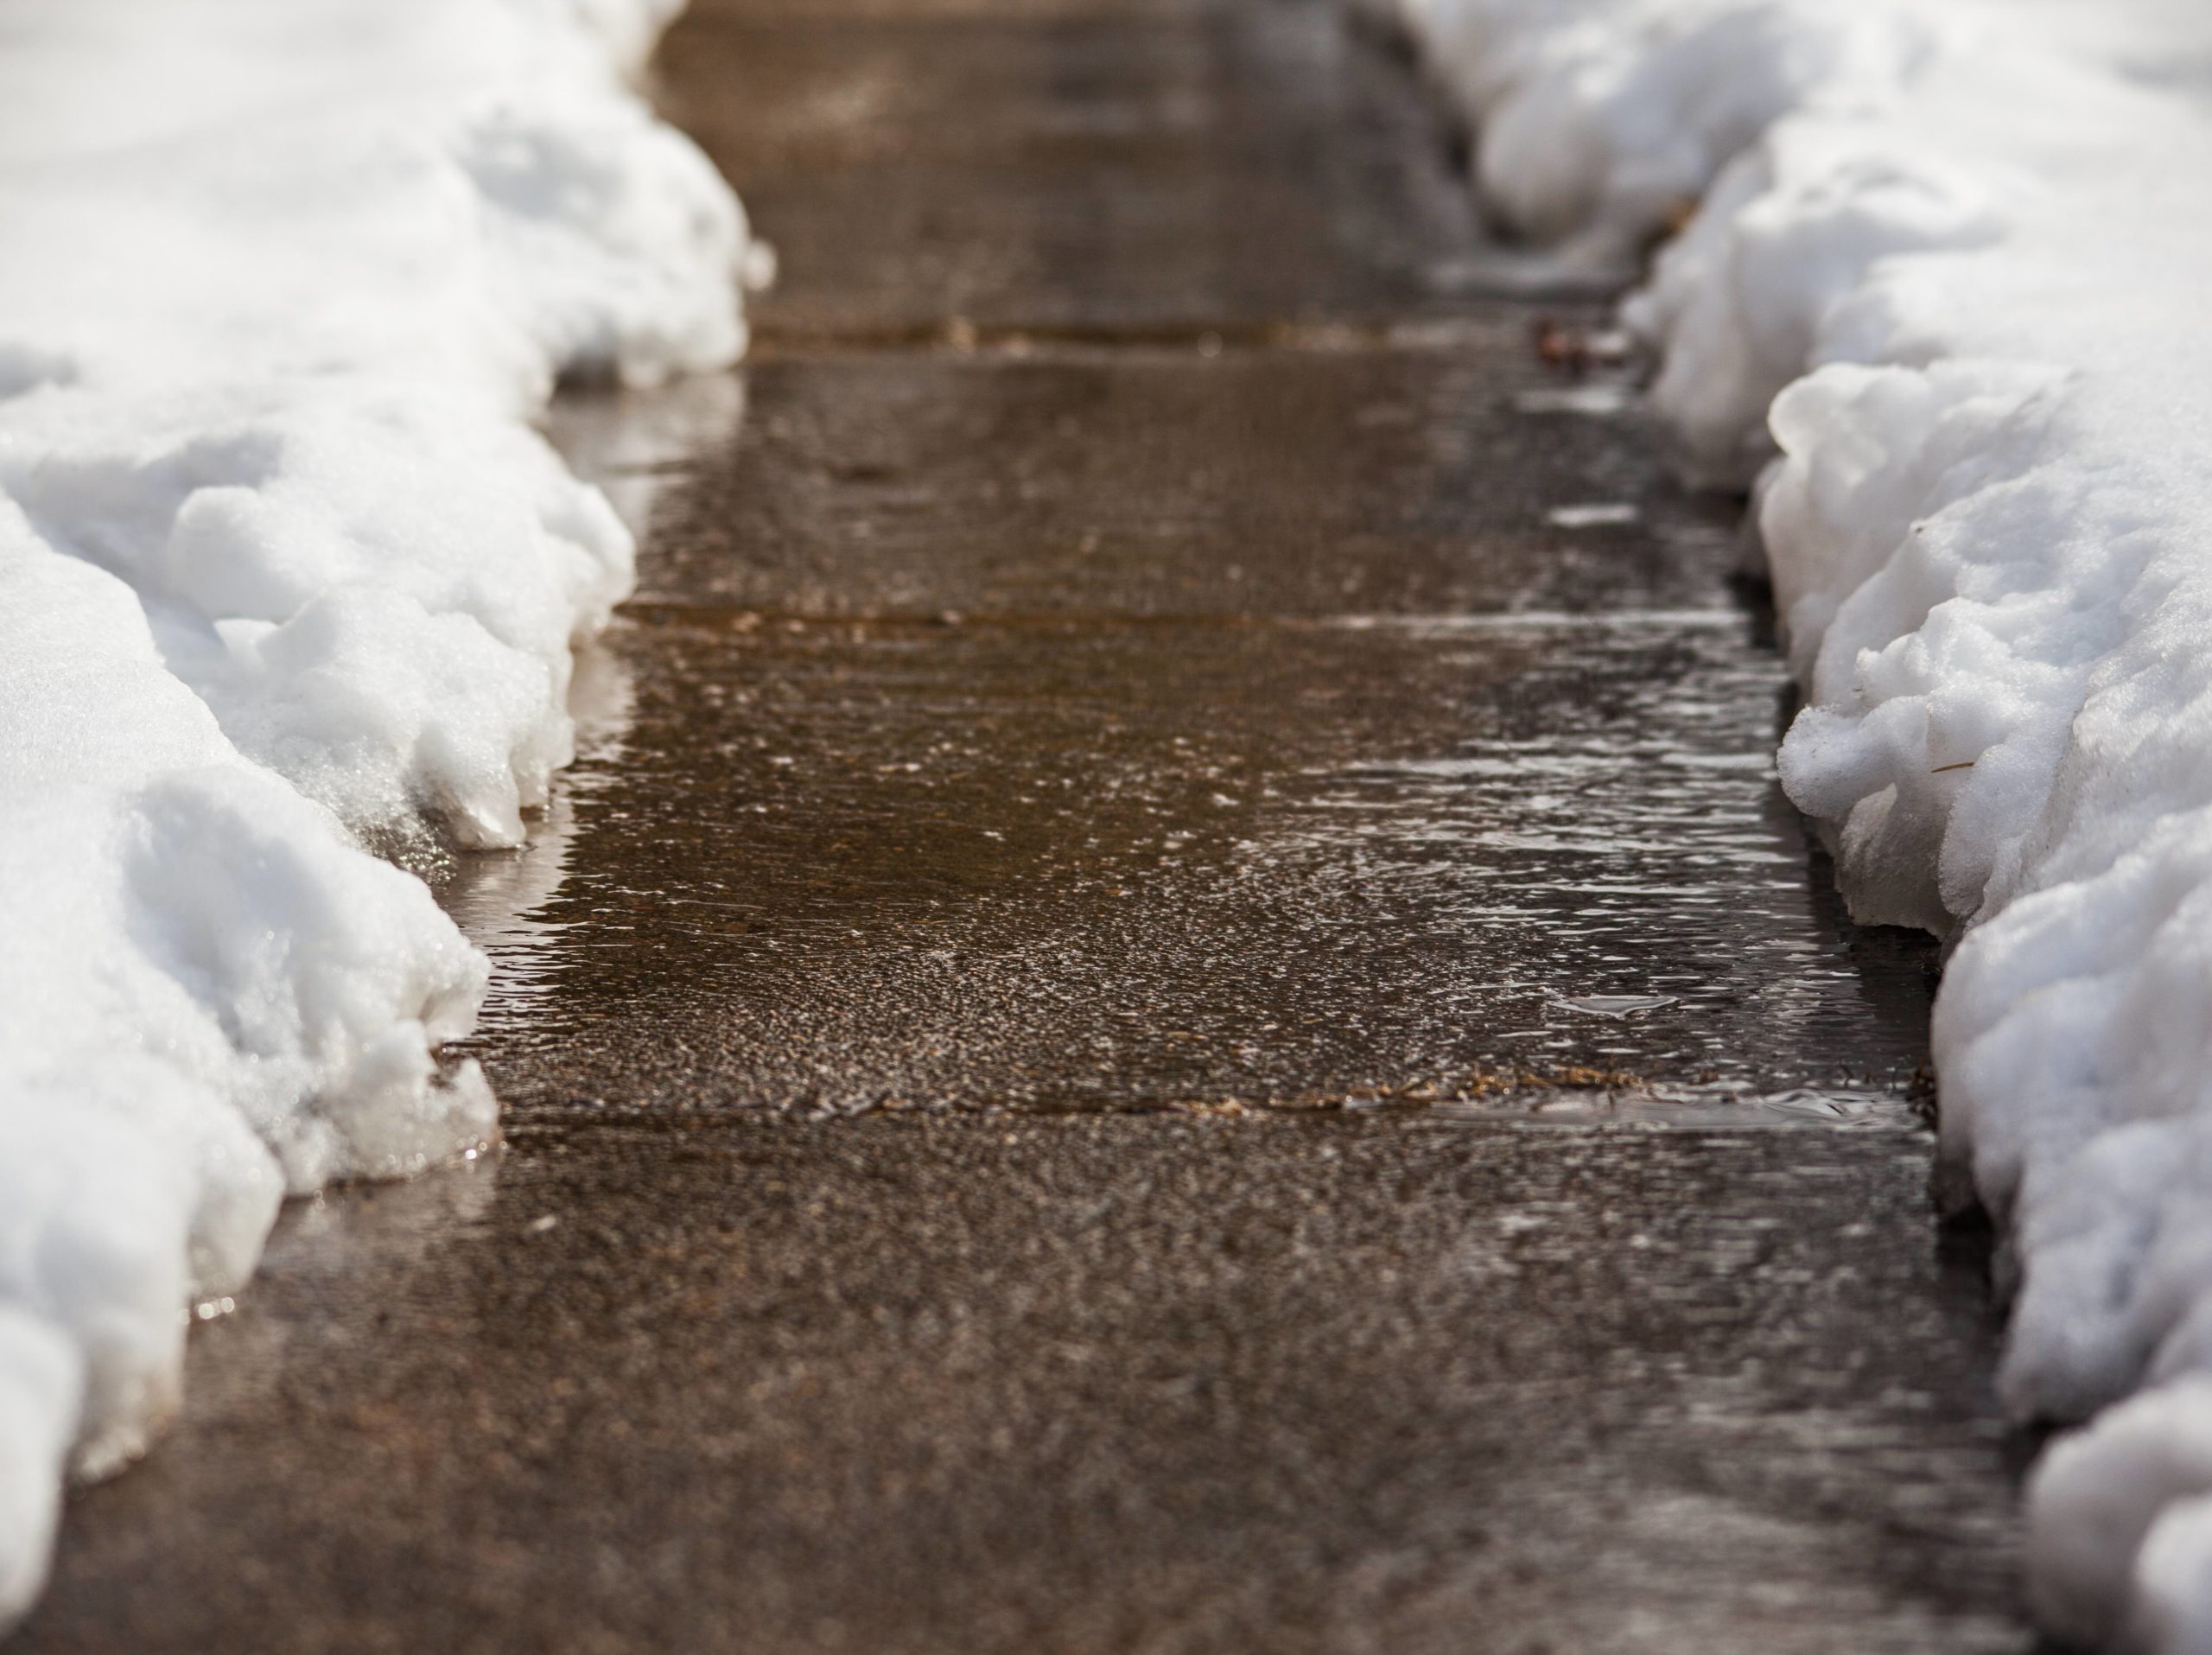 An icy sidewalk